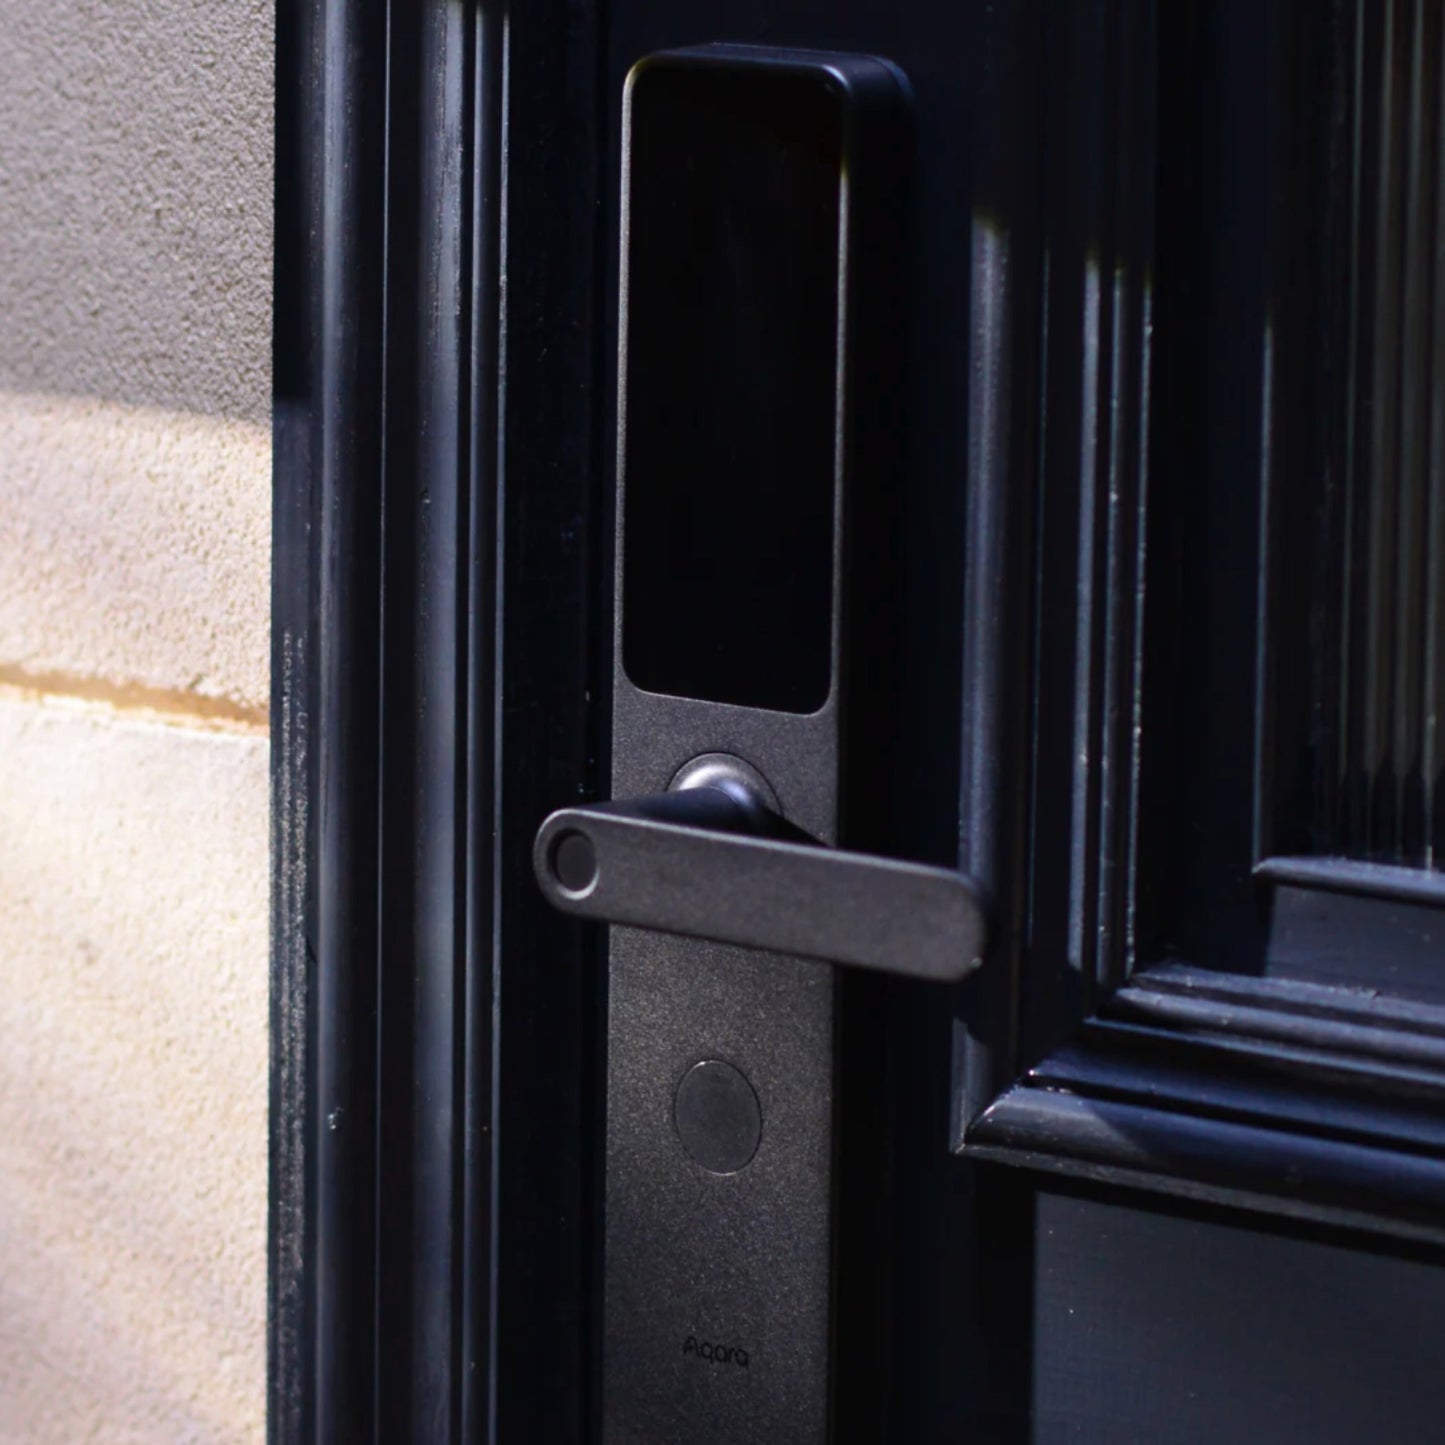 Aqara Smart Door Lock A100 shown on black door